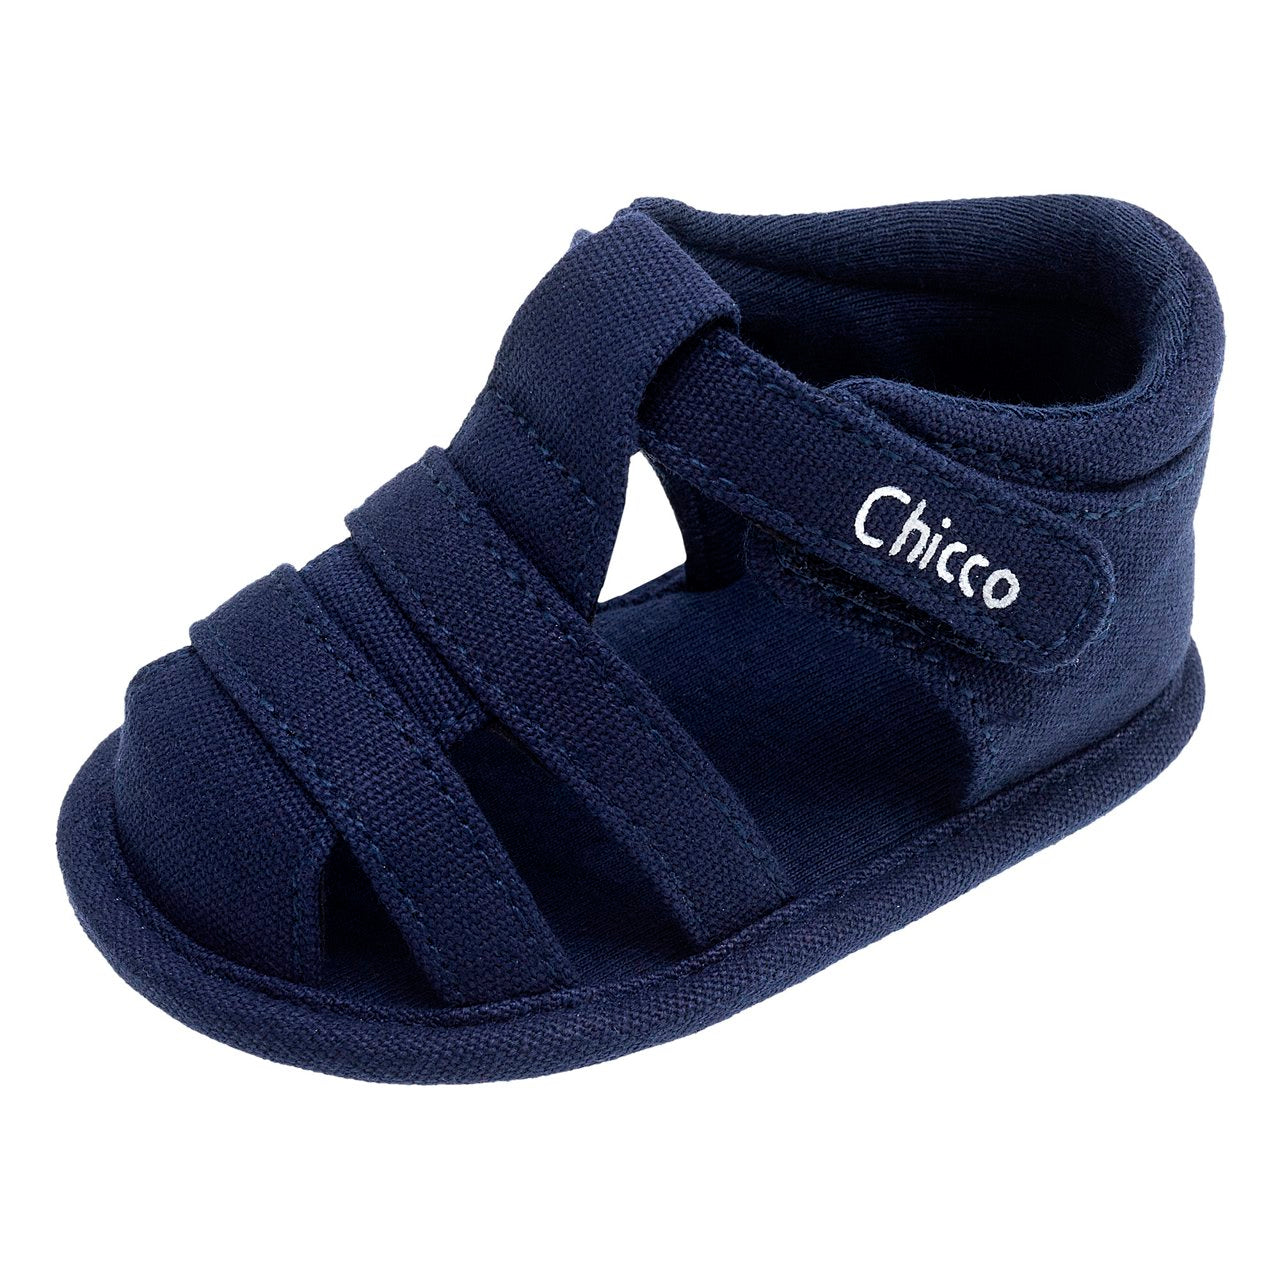 Sandalo neonato in tessuto - NUOVA COLLEZIONE CHICCO P/E 2024